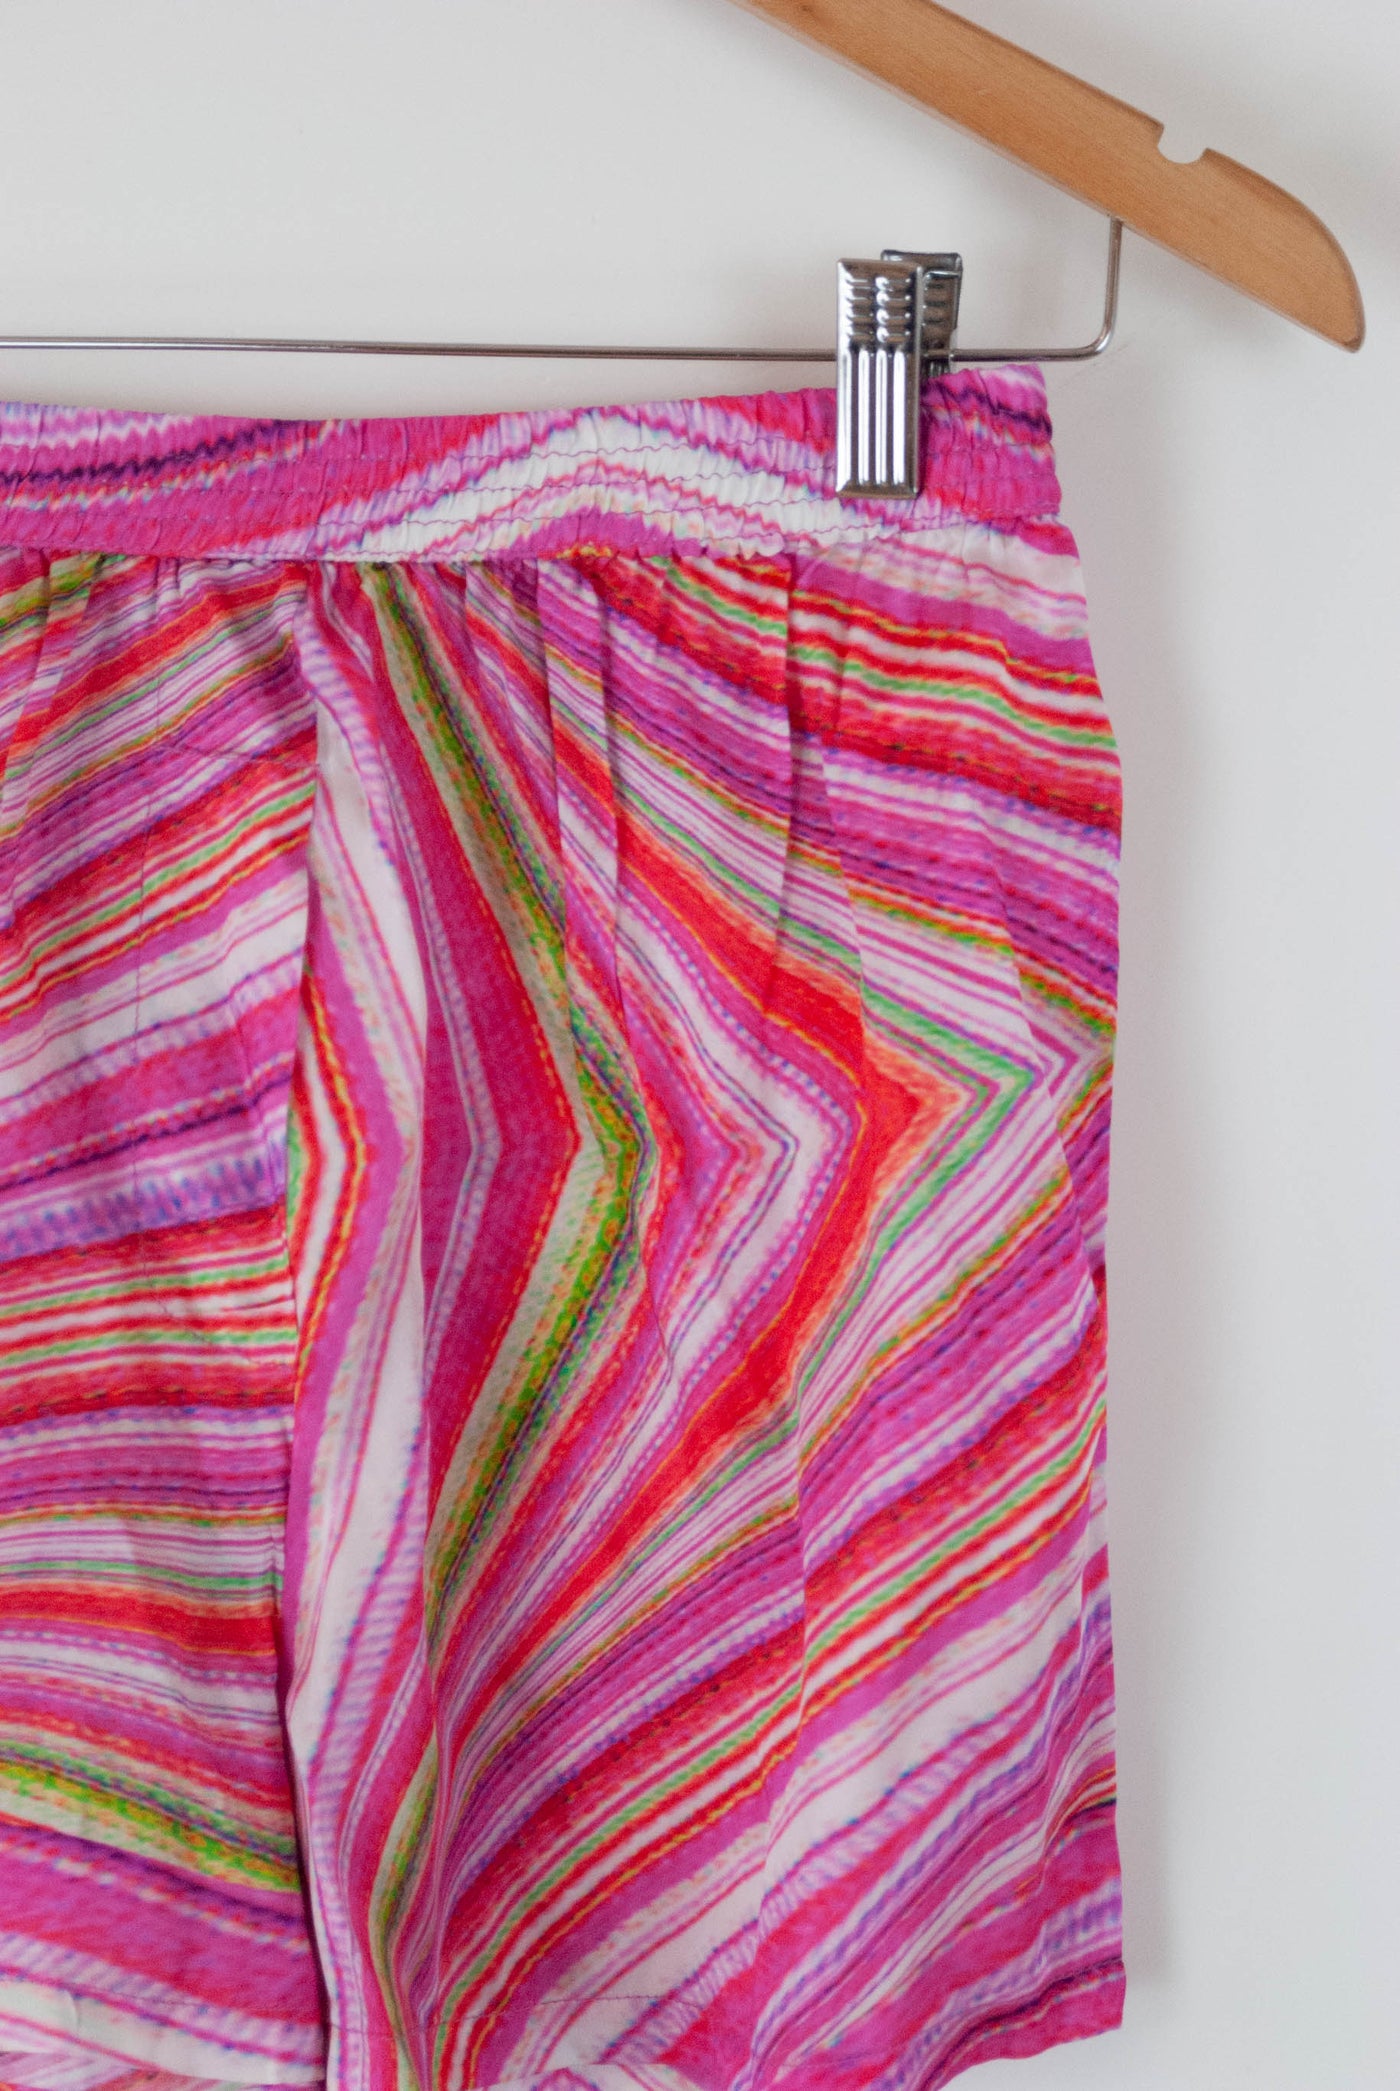 Pantalón corto rosa con colores